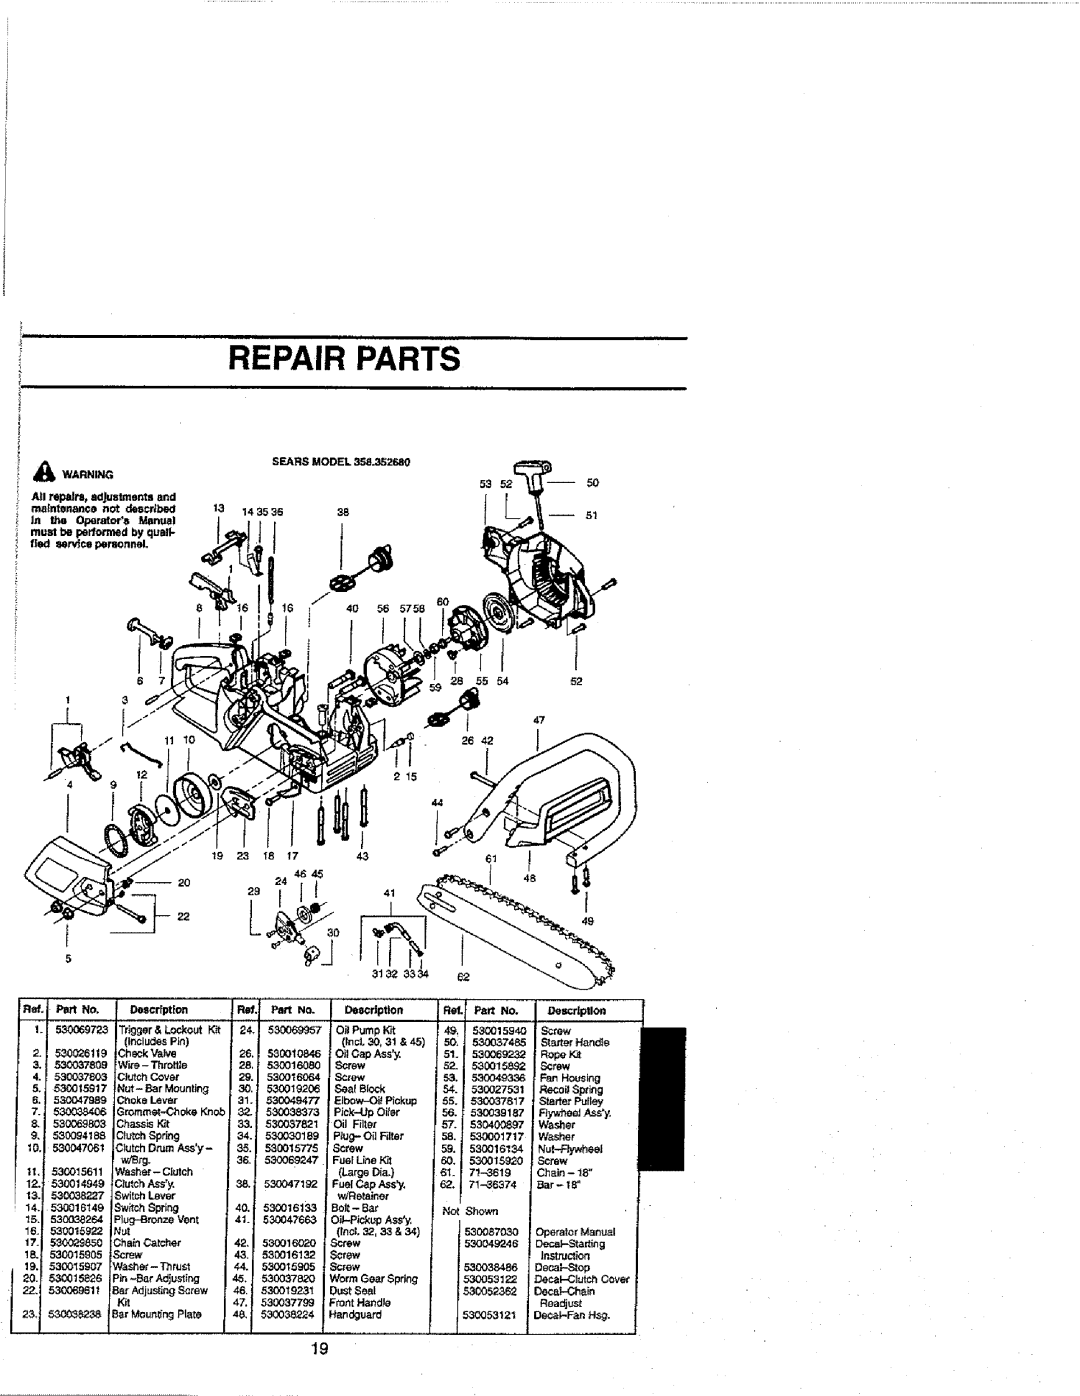 Craftsman 358.352680 - 18 IN. BAR manual Repair Parts, Ass, 530016020, Screw, 530019231, 530037799, Front HandJe 